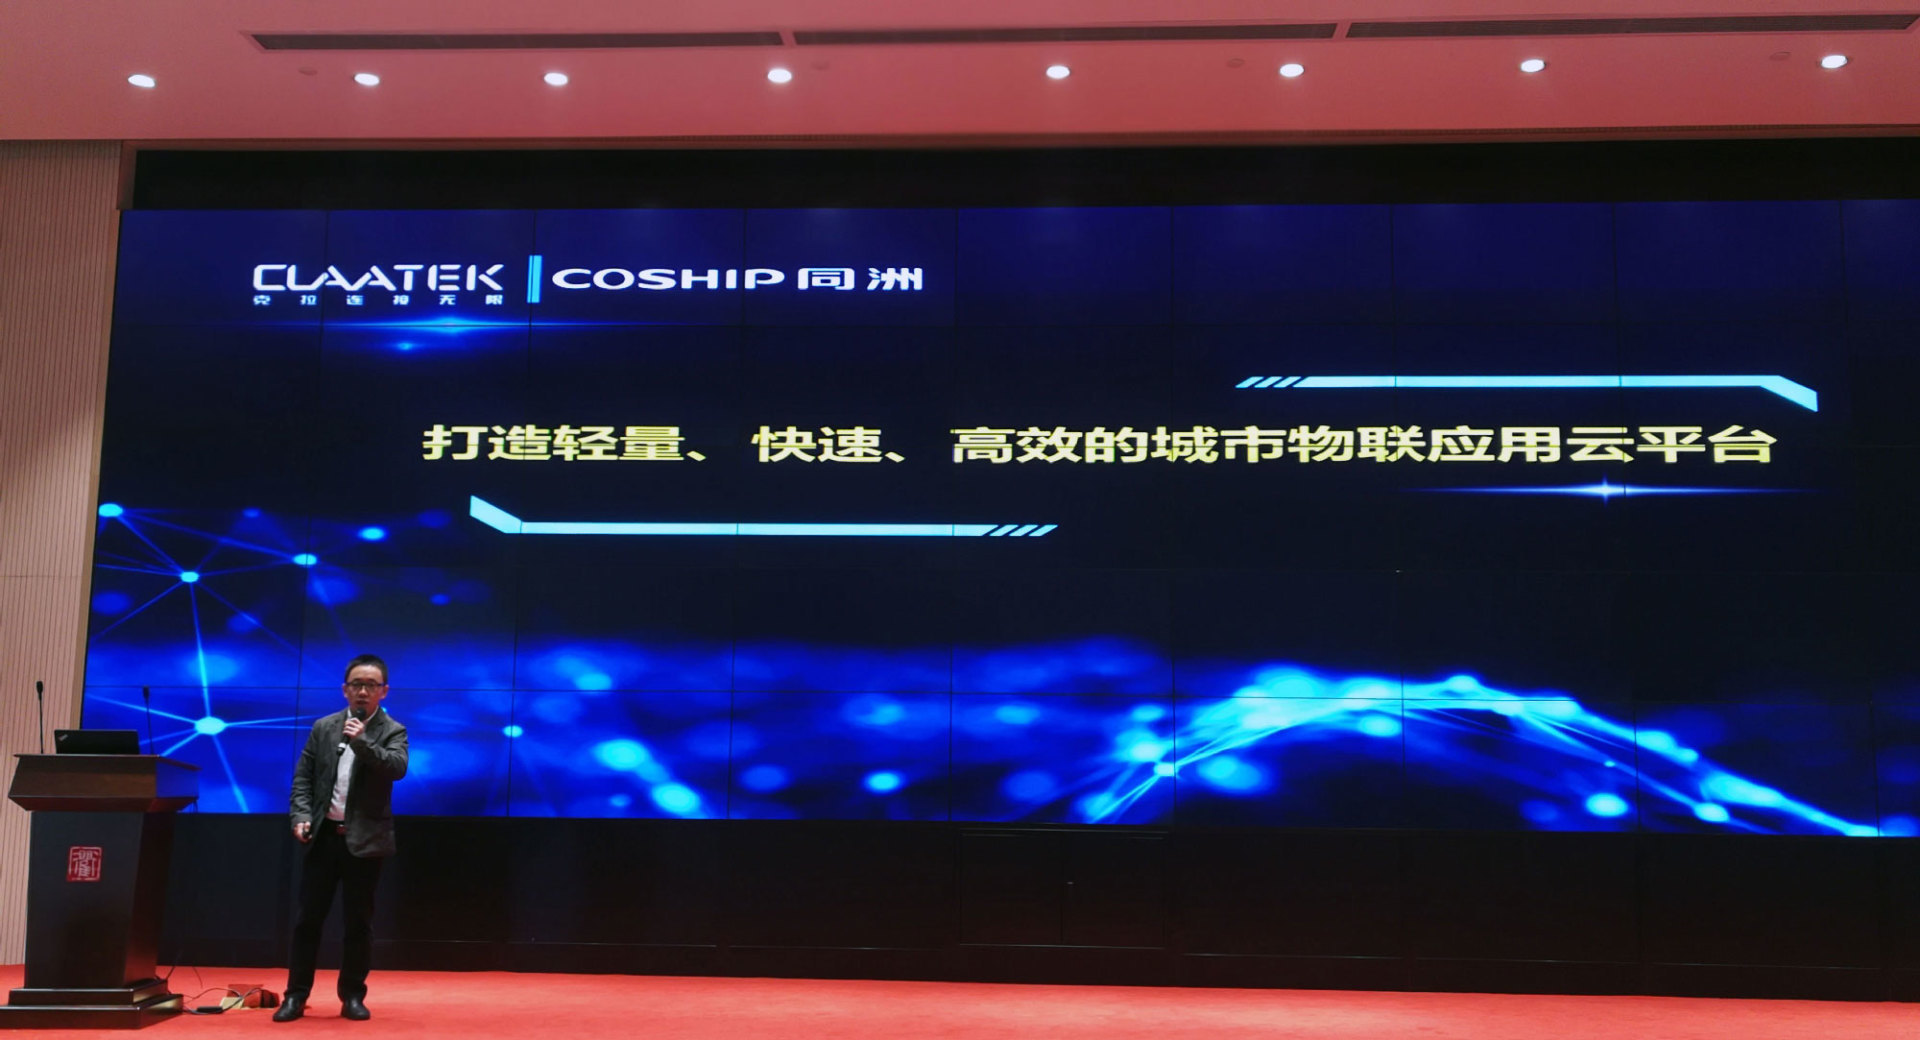 同洲亮相第三届中国LoRa物联网国际峰会，荣获CLAA综合方案钻石合作伙伴”称号